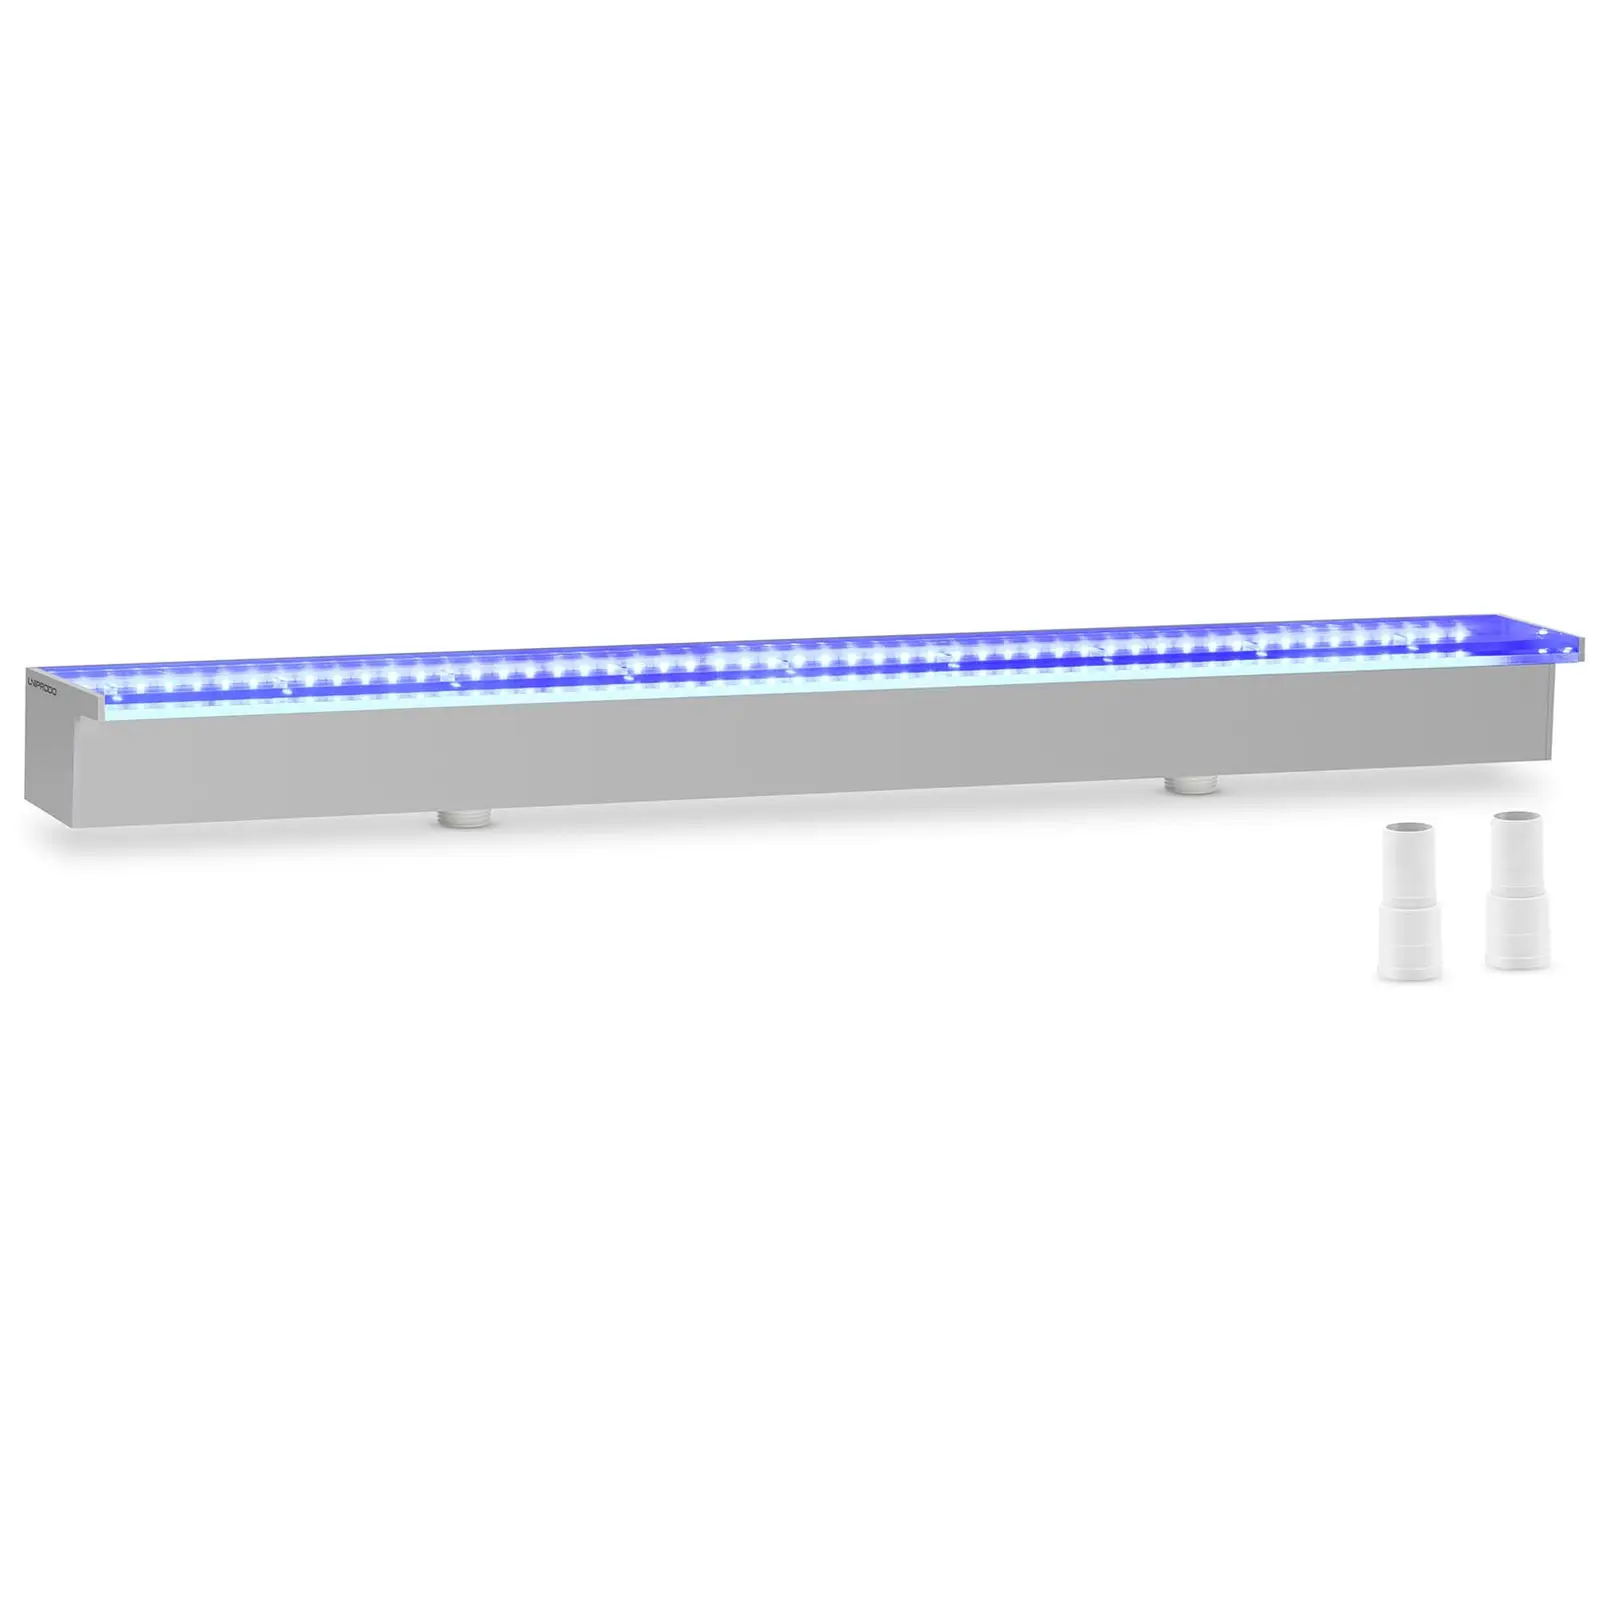 Medence szökőkút - 90 cm - LED világítás - kék/fehér